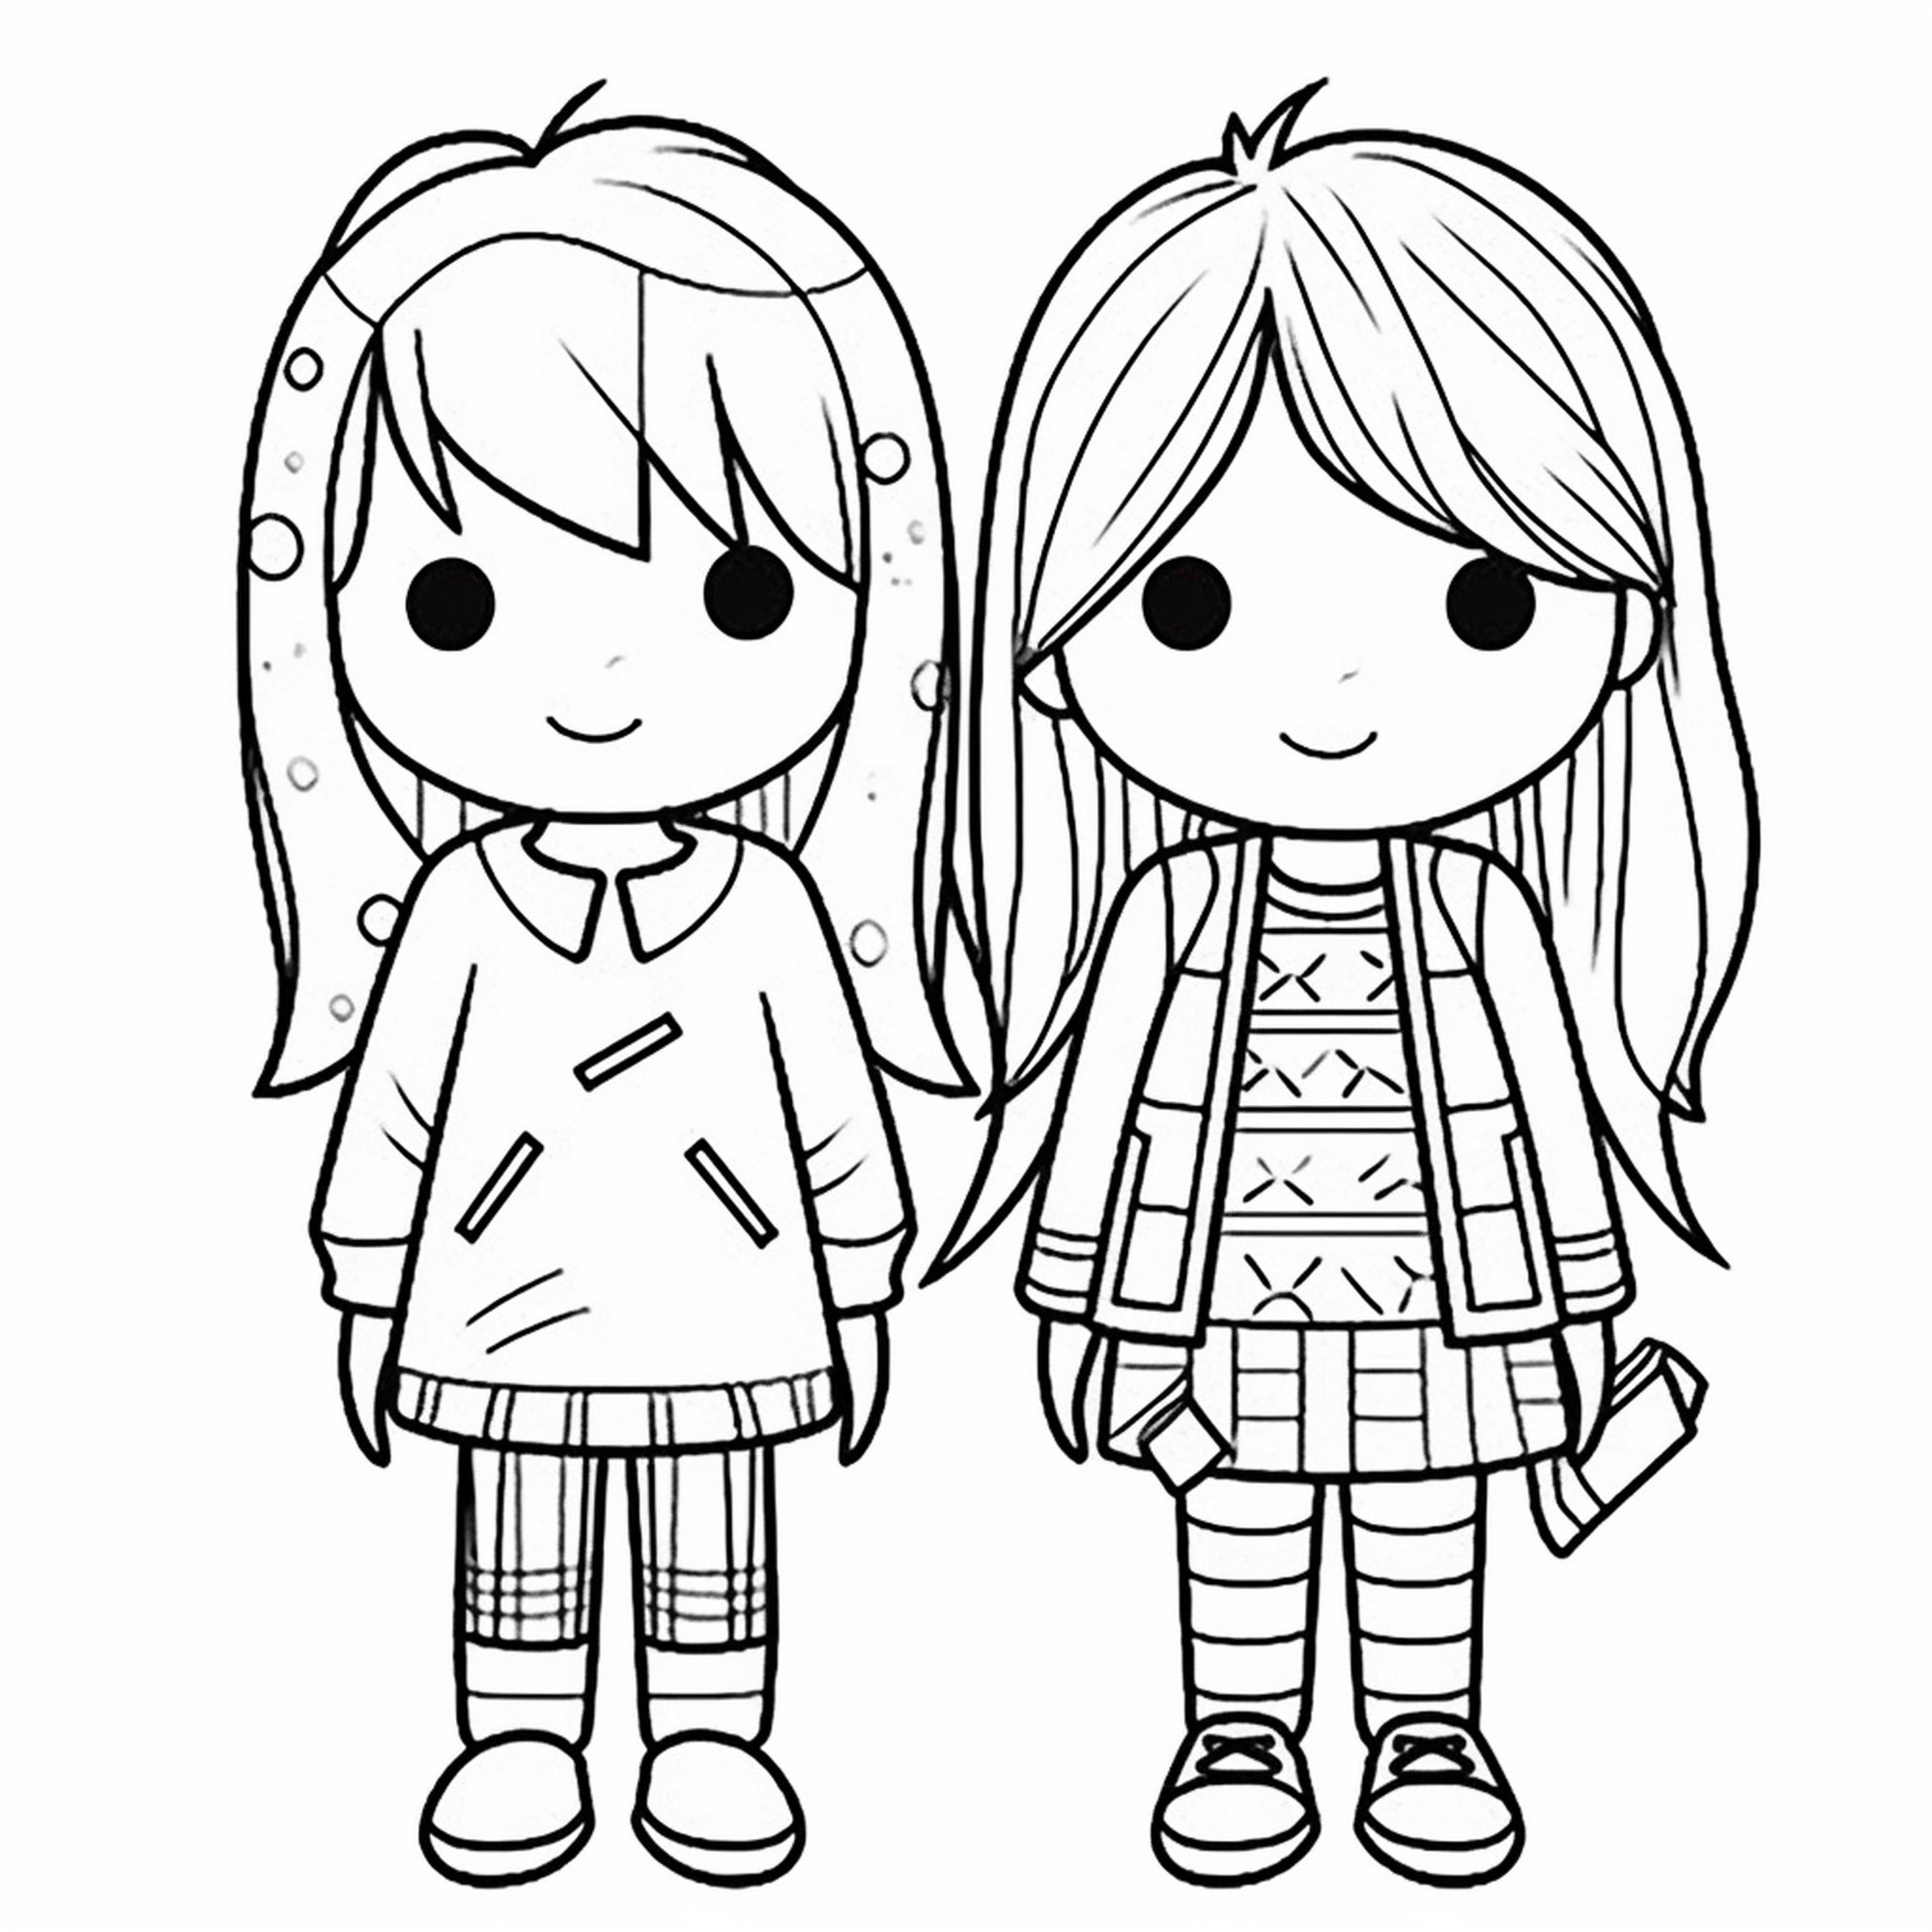 Раскраска для детей: куклы девочек «Добрая подружка»